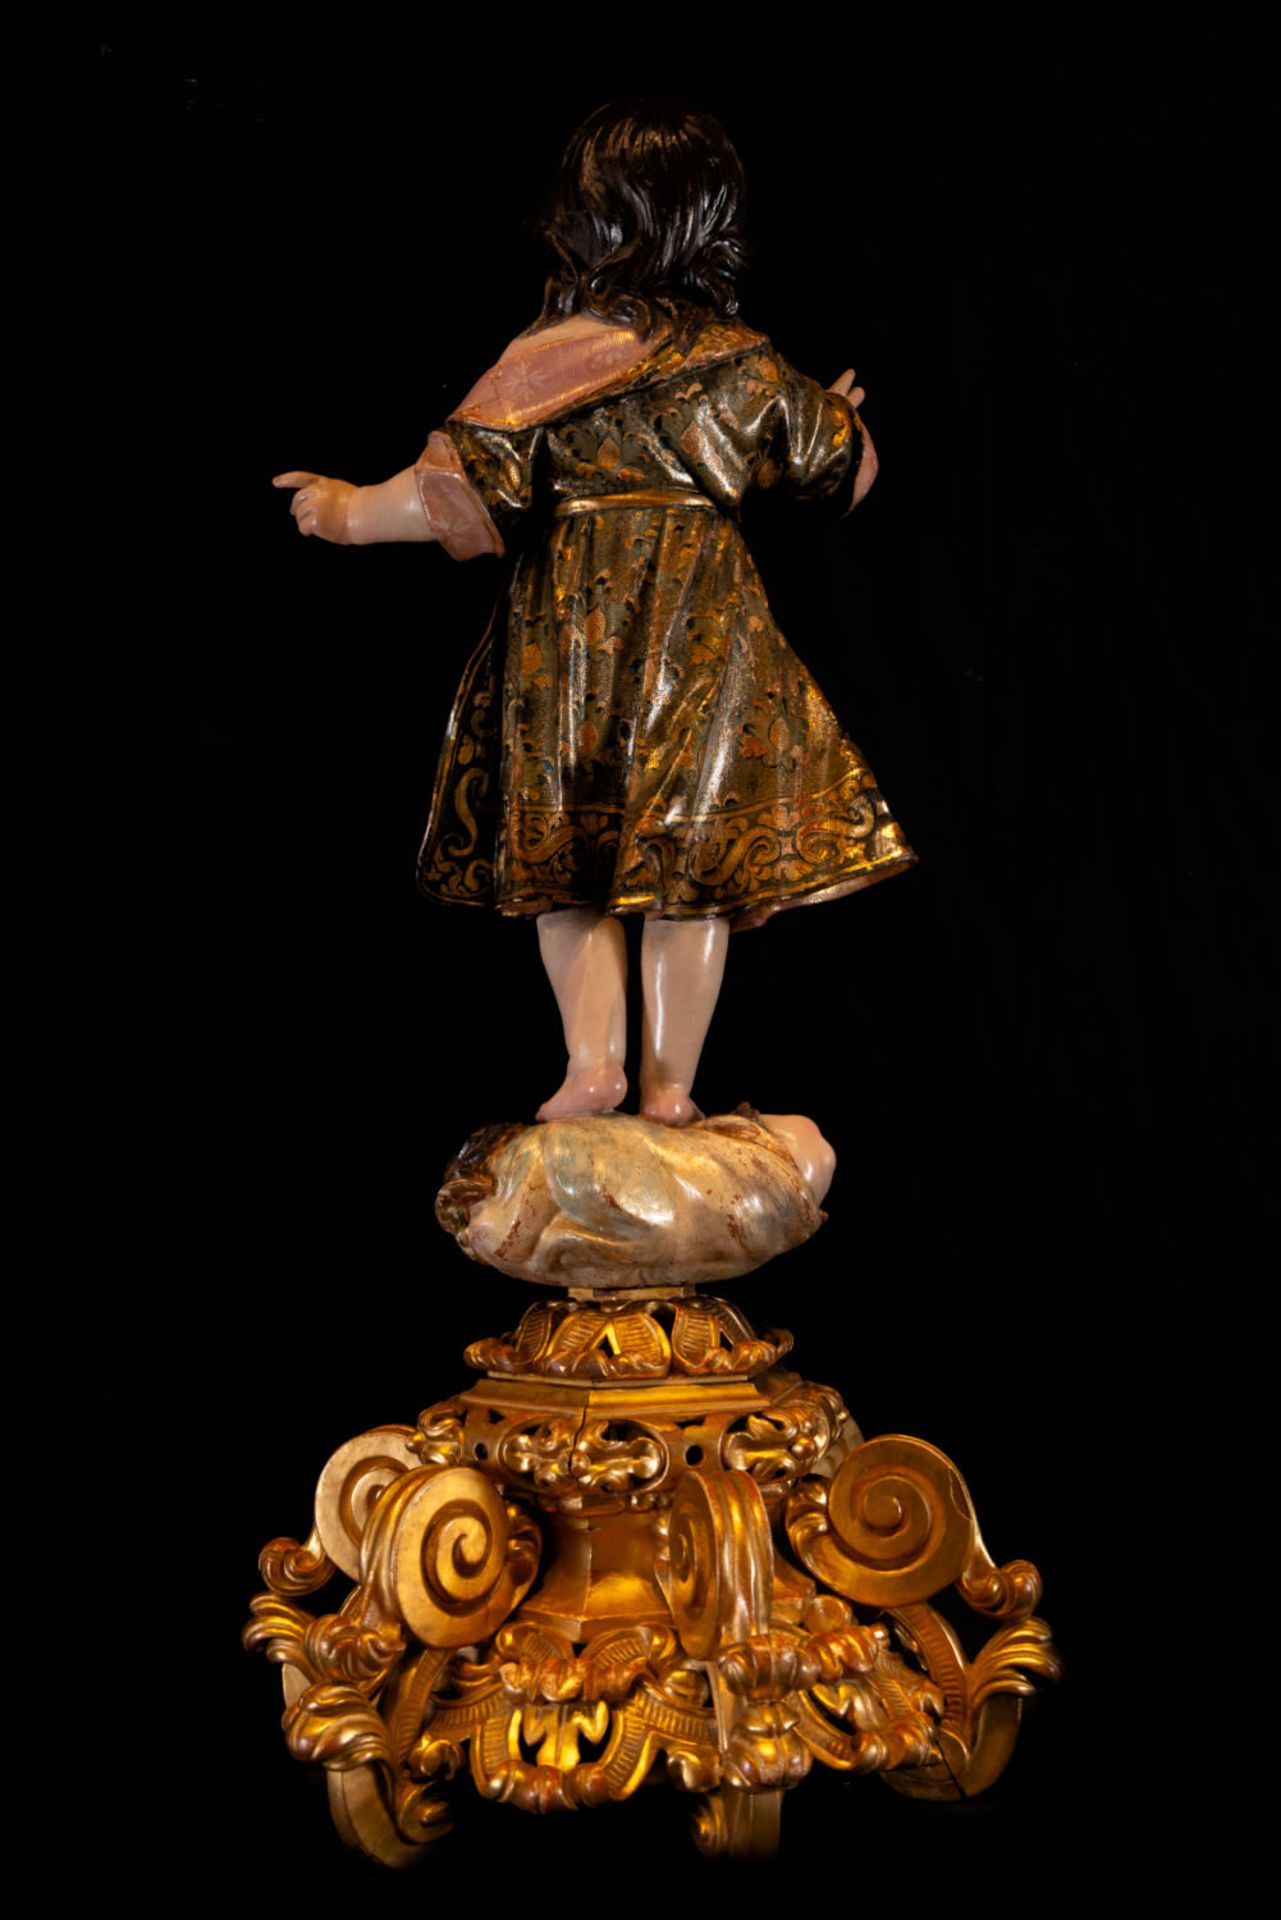 Enfant Jesus in Glory - Attributed to Luisa Roldán (Sevilla, 1652 - Madrid, 10 de enero de 1706) - Image 9 of 9